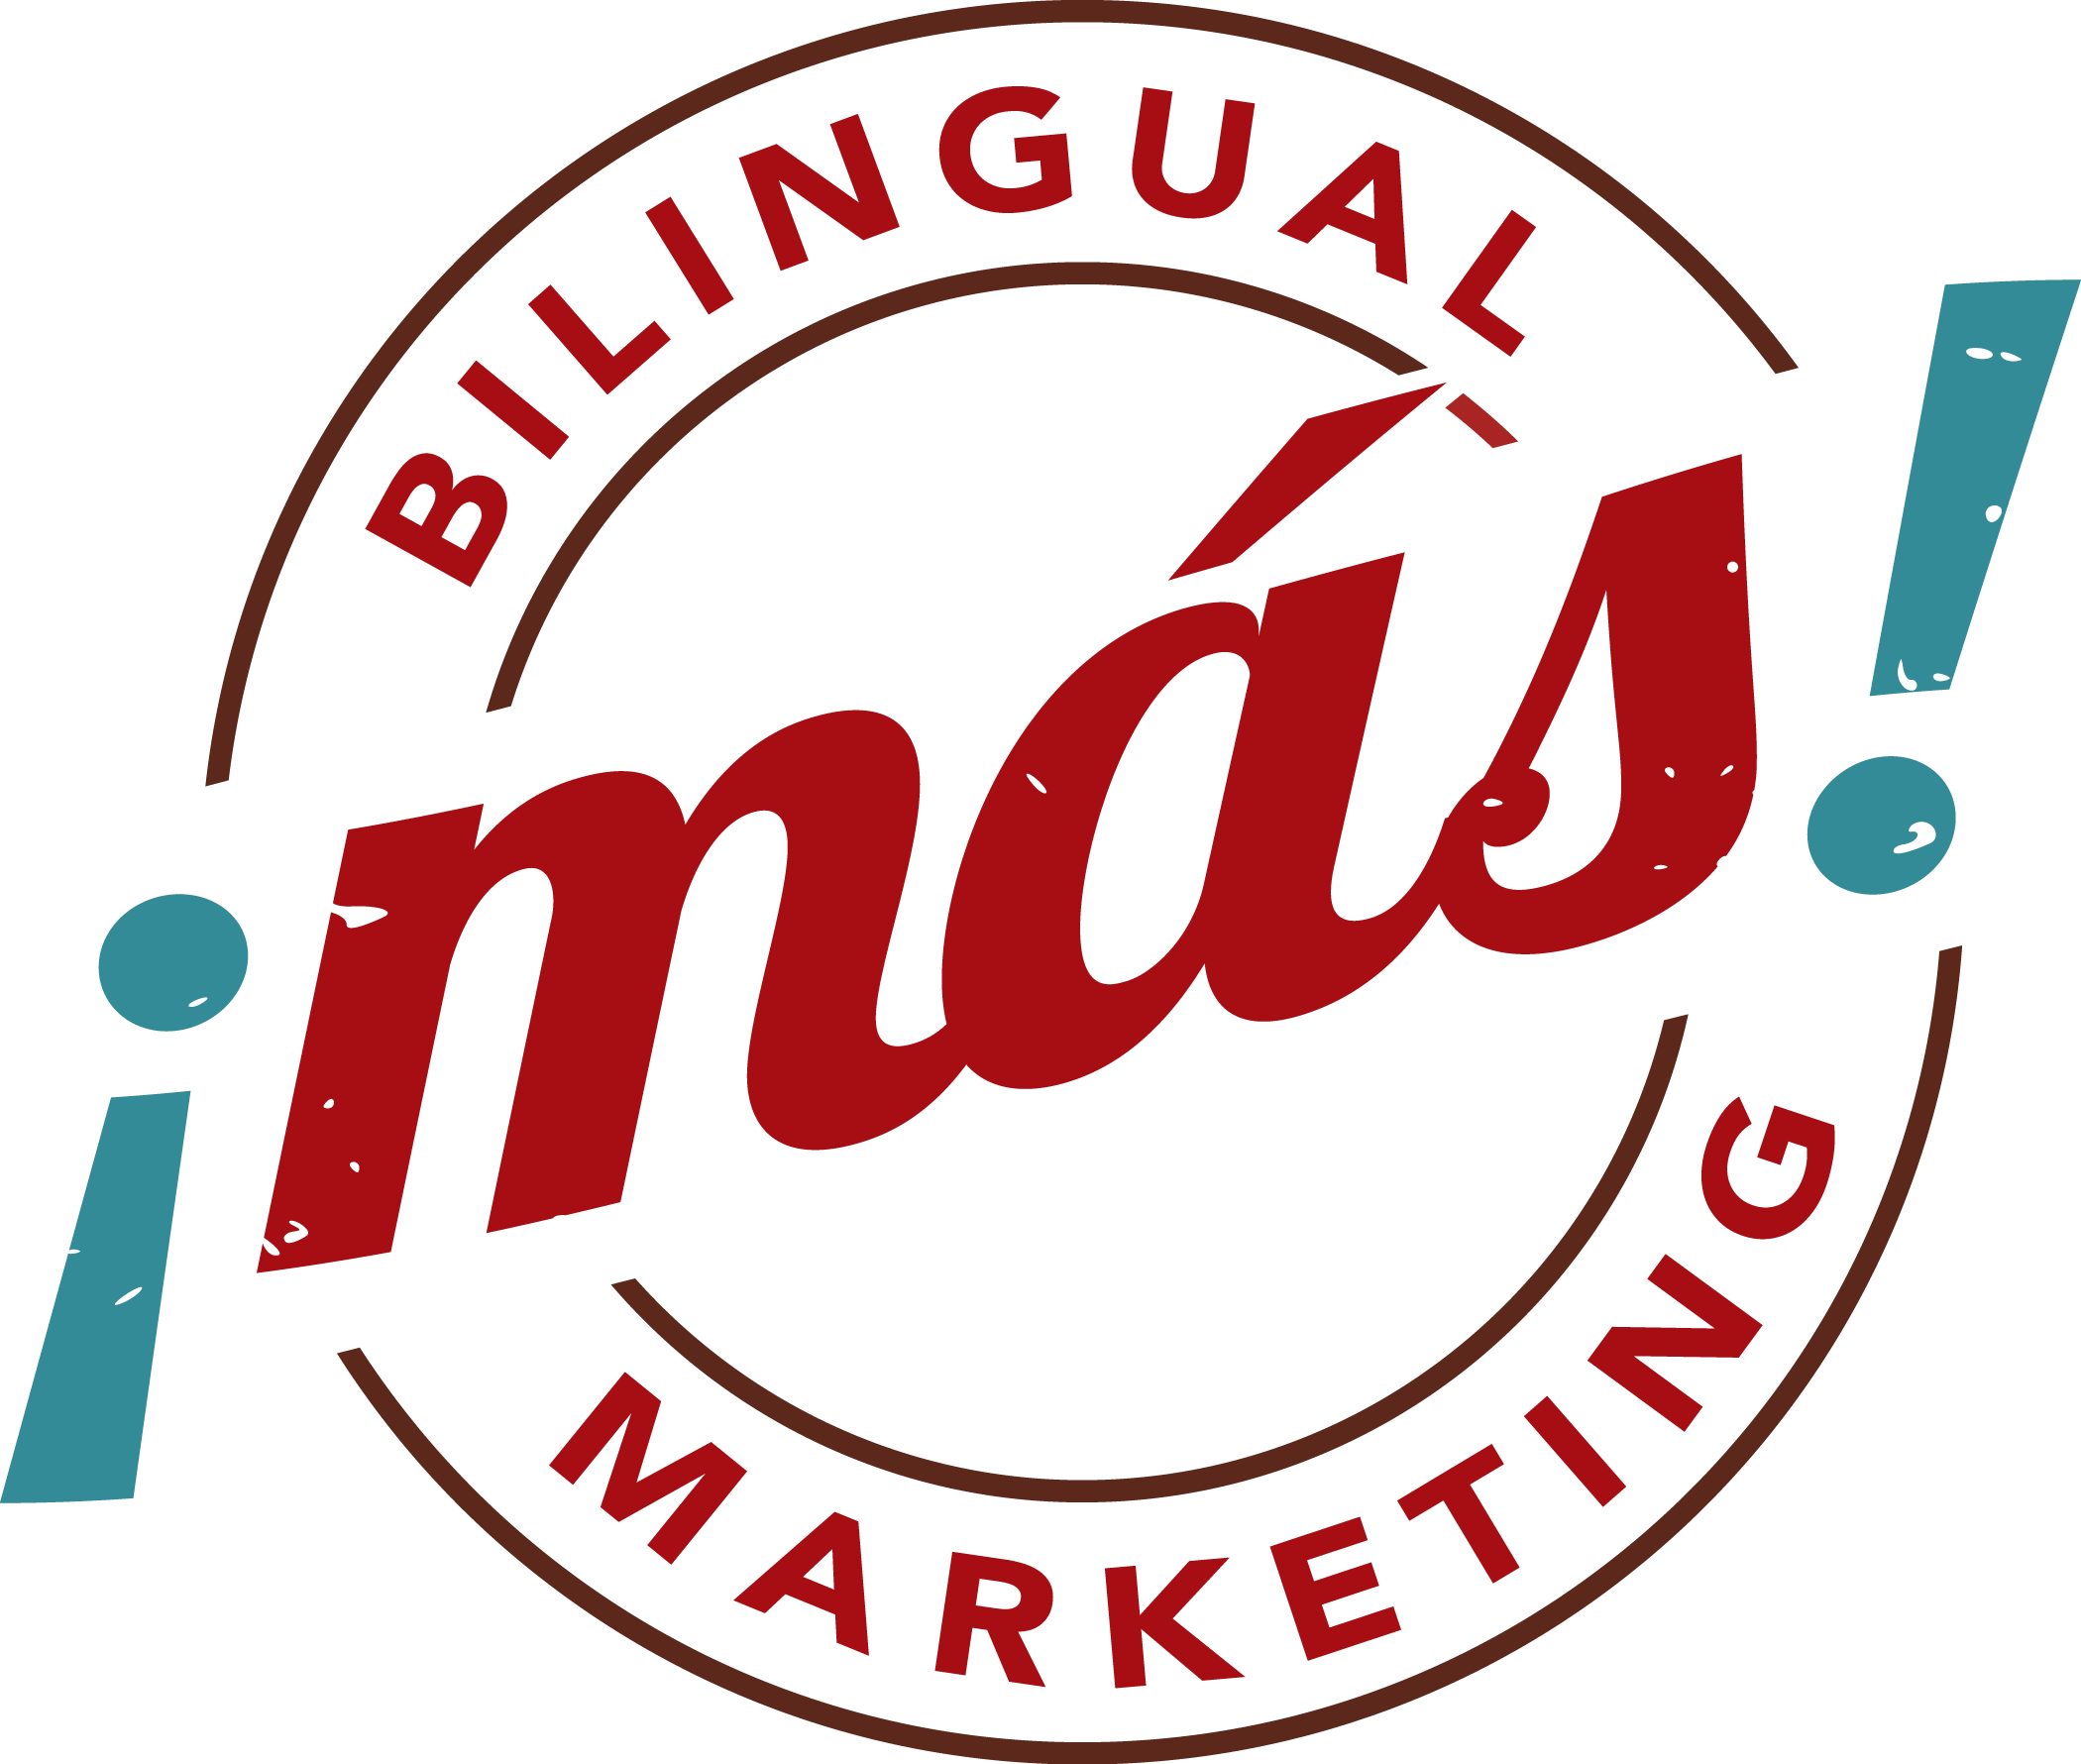 Más Bilingual Marketing, Más Video Productions, Más Photography